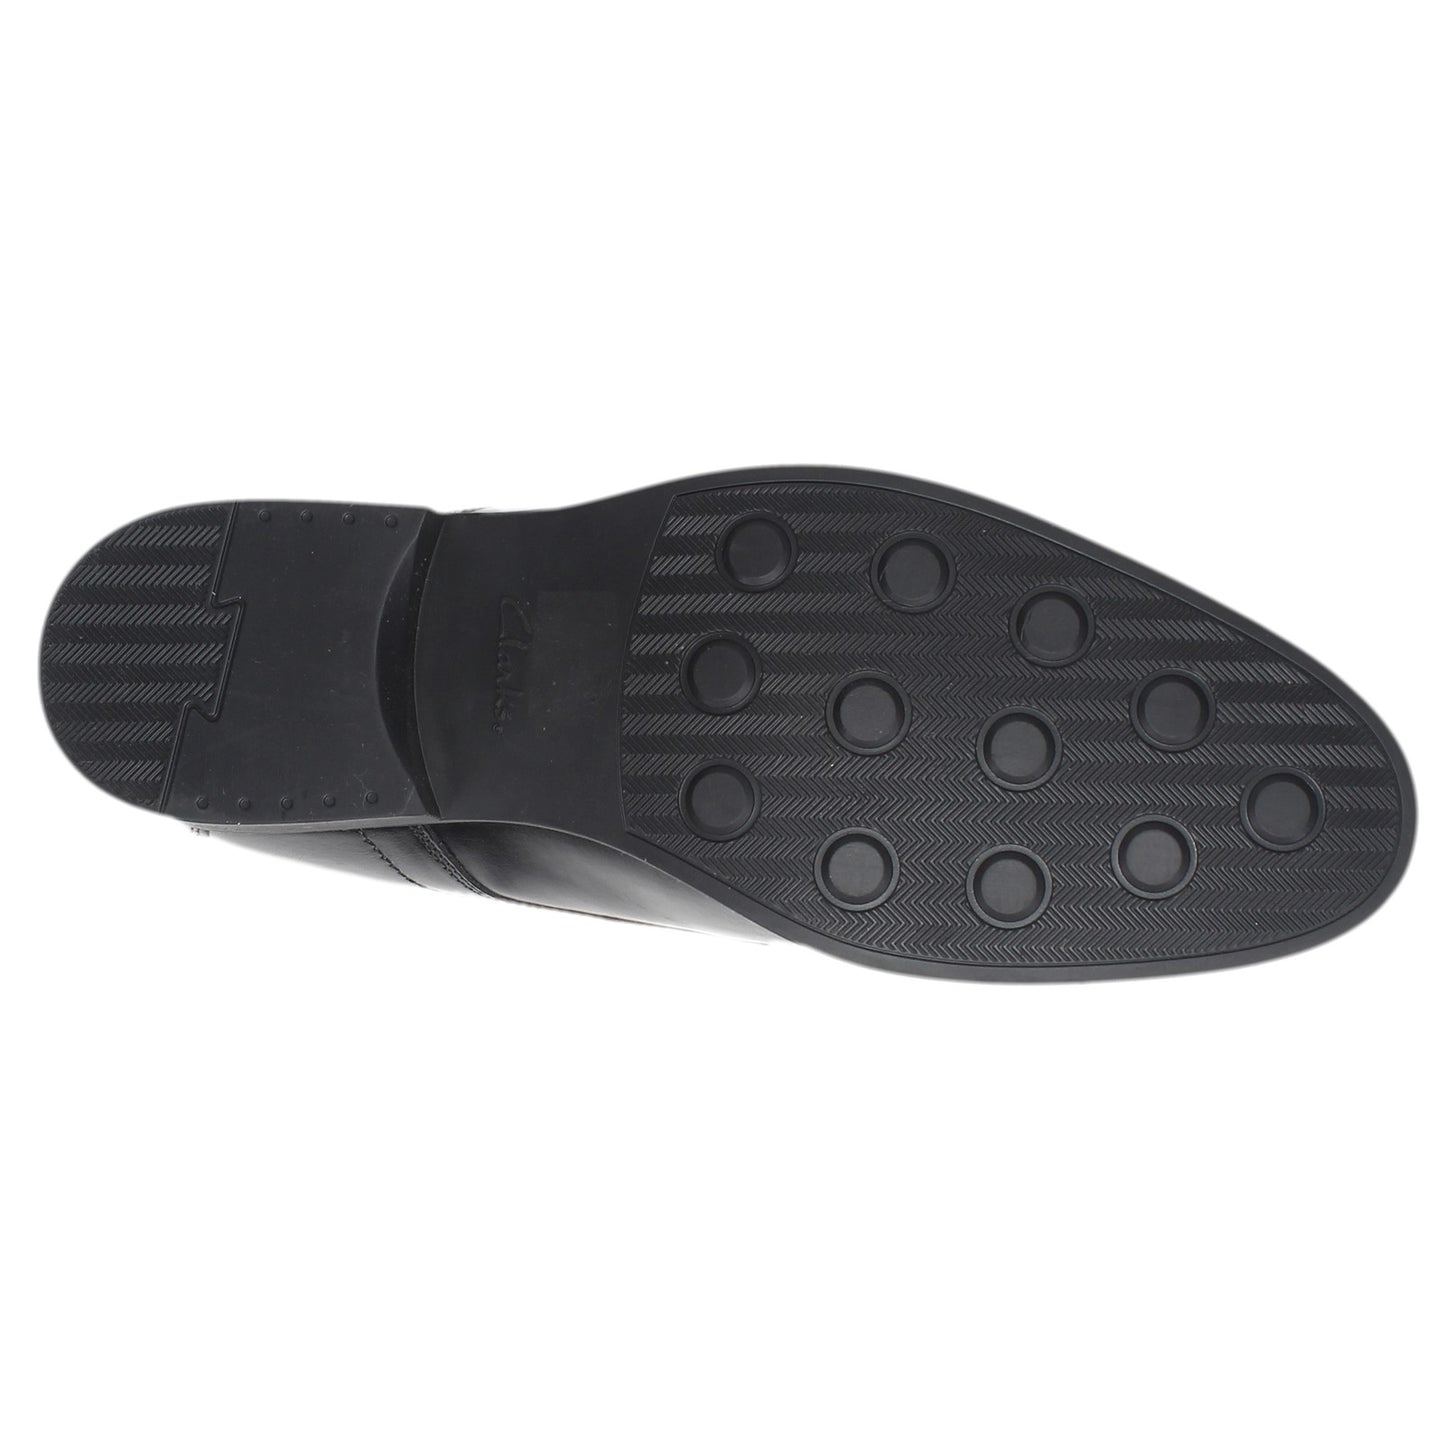 Peltz Shoes  Men's Clarks Whiddon Plain Toe Oxford BLACK 26152918